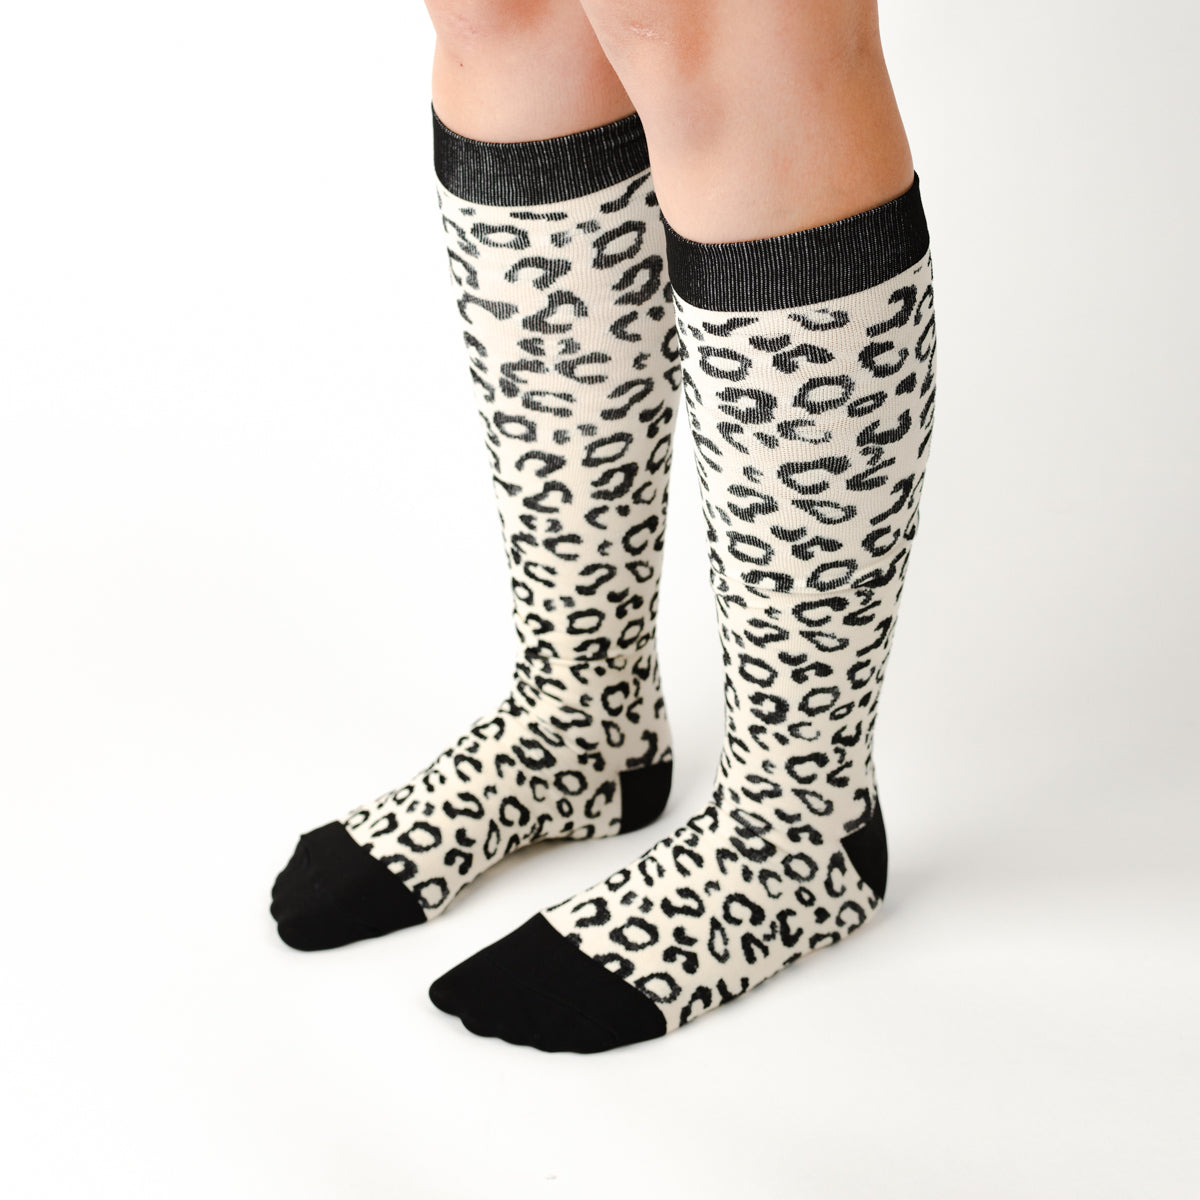 Leopard Print Compression Socks